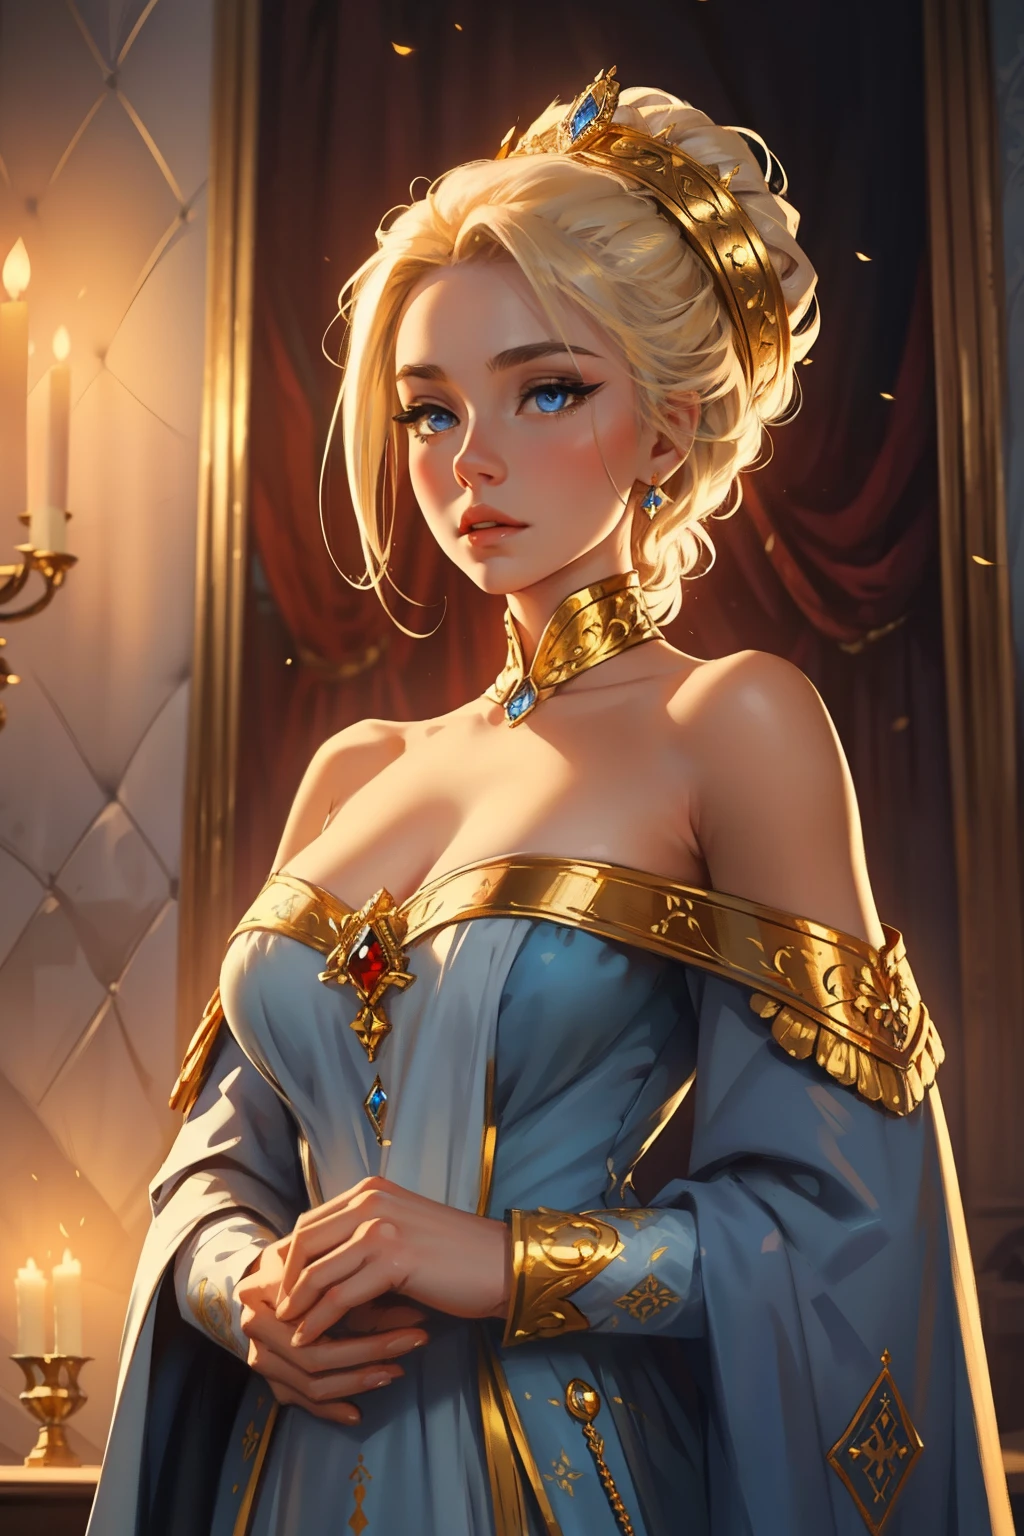 幻想, 19 世纪, 皇后, 女士, 娇嫩的脸庞, 有着淡金色的头发, 梳理头发, 蓝眼睛, 穿着露肩白色皇室礼服, 布料上的金色图案, 肩上披着一条红丝带，上面绣着君主的徽章, 高清